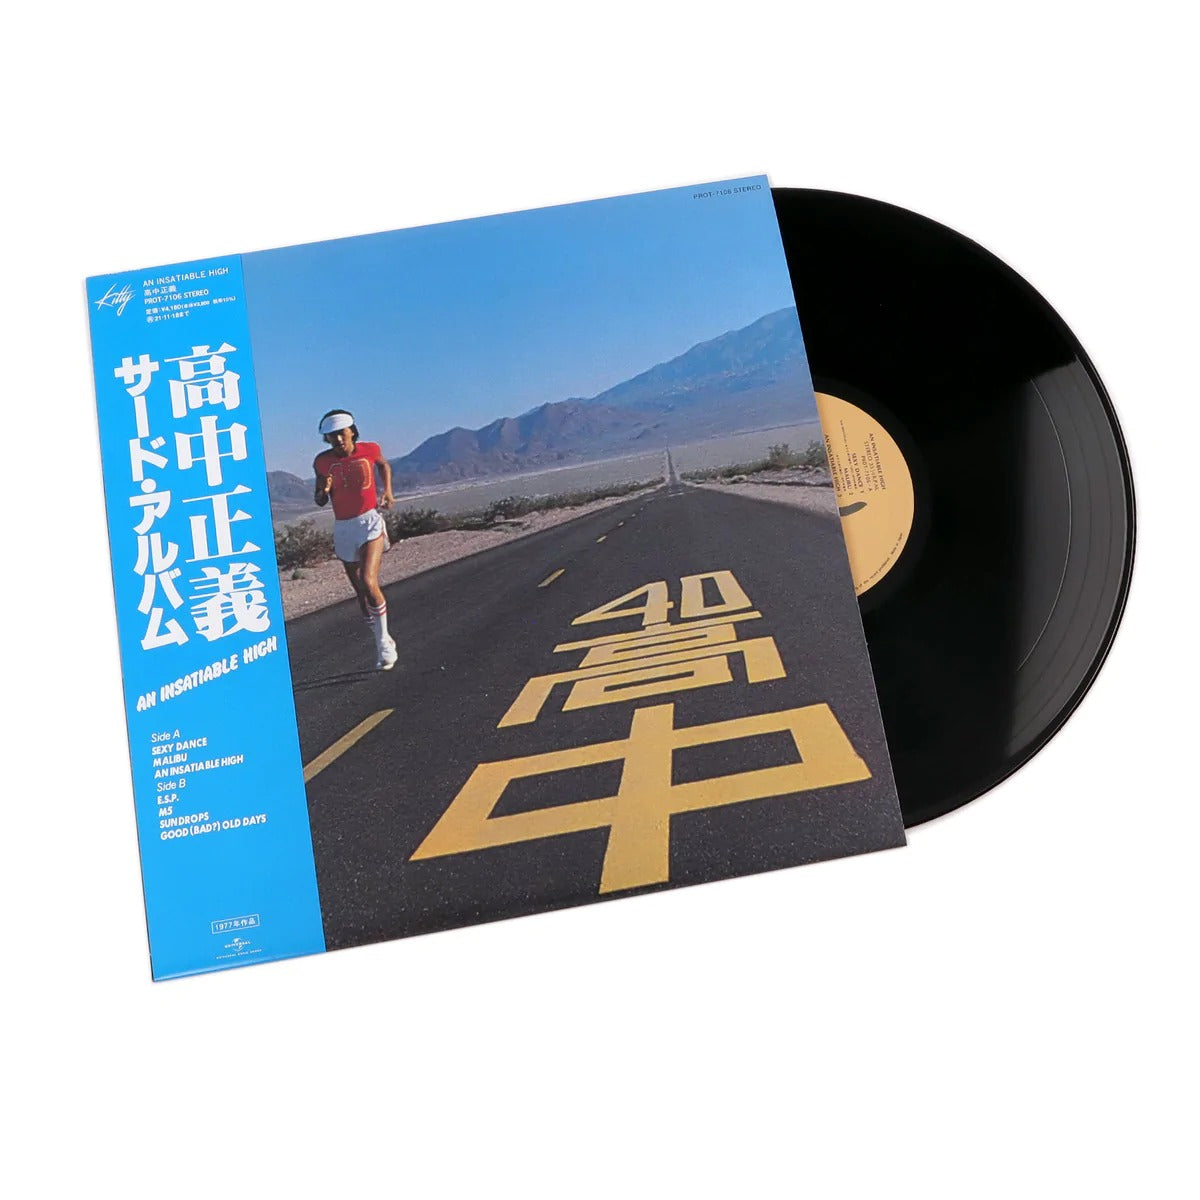 Masayoshi Takanaka - An Insatiable High LP (OBI Strip)